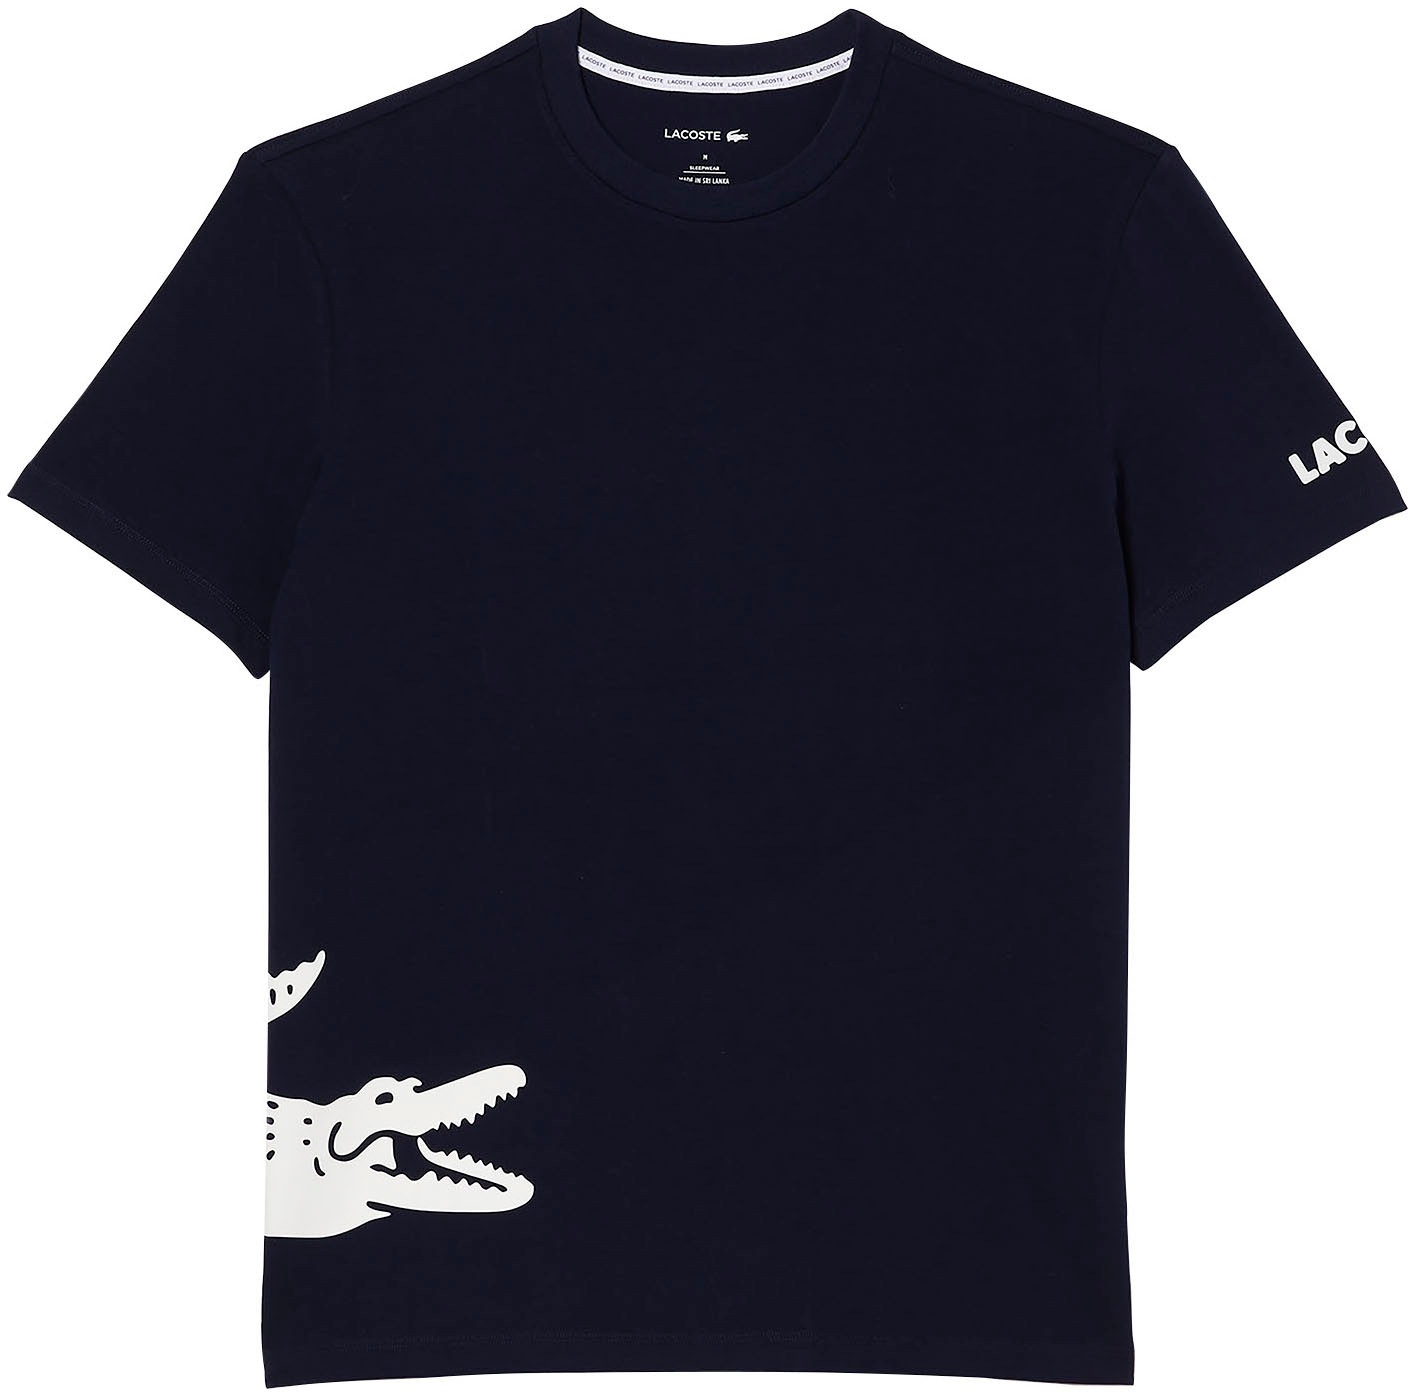 Lacoste T-Shirt online kaufen bei OTTO